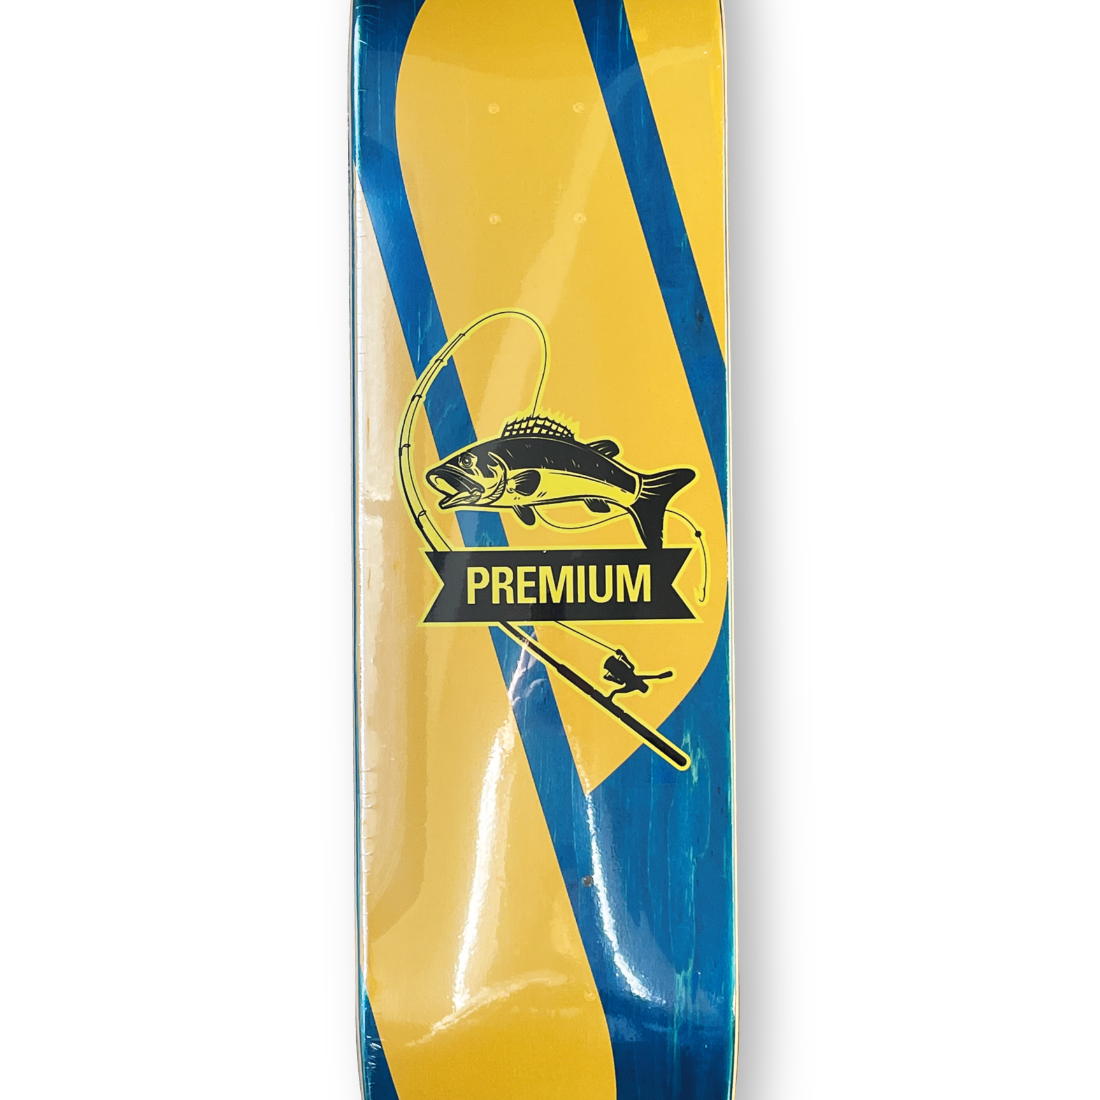 (子供用)【7.25】Premium Skateboards - Big Fishing